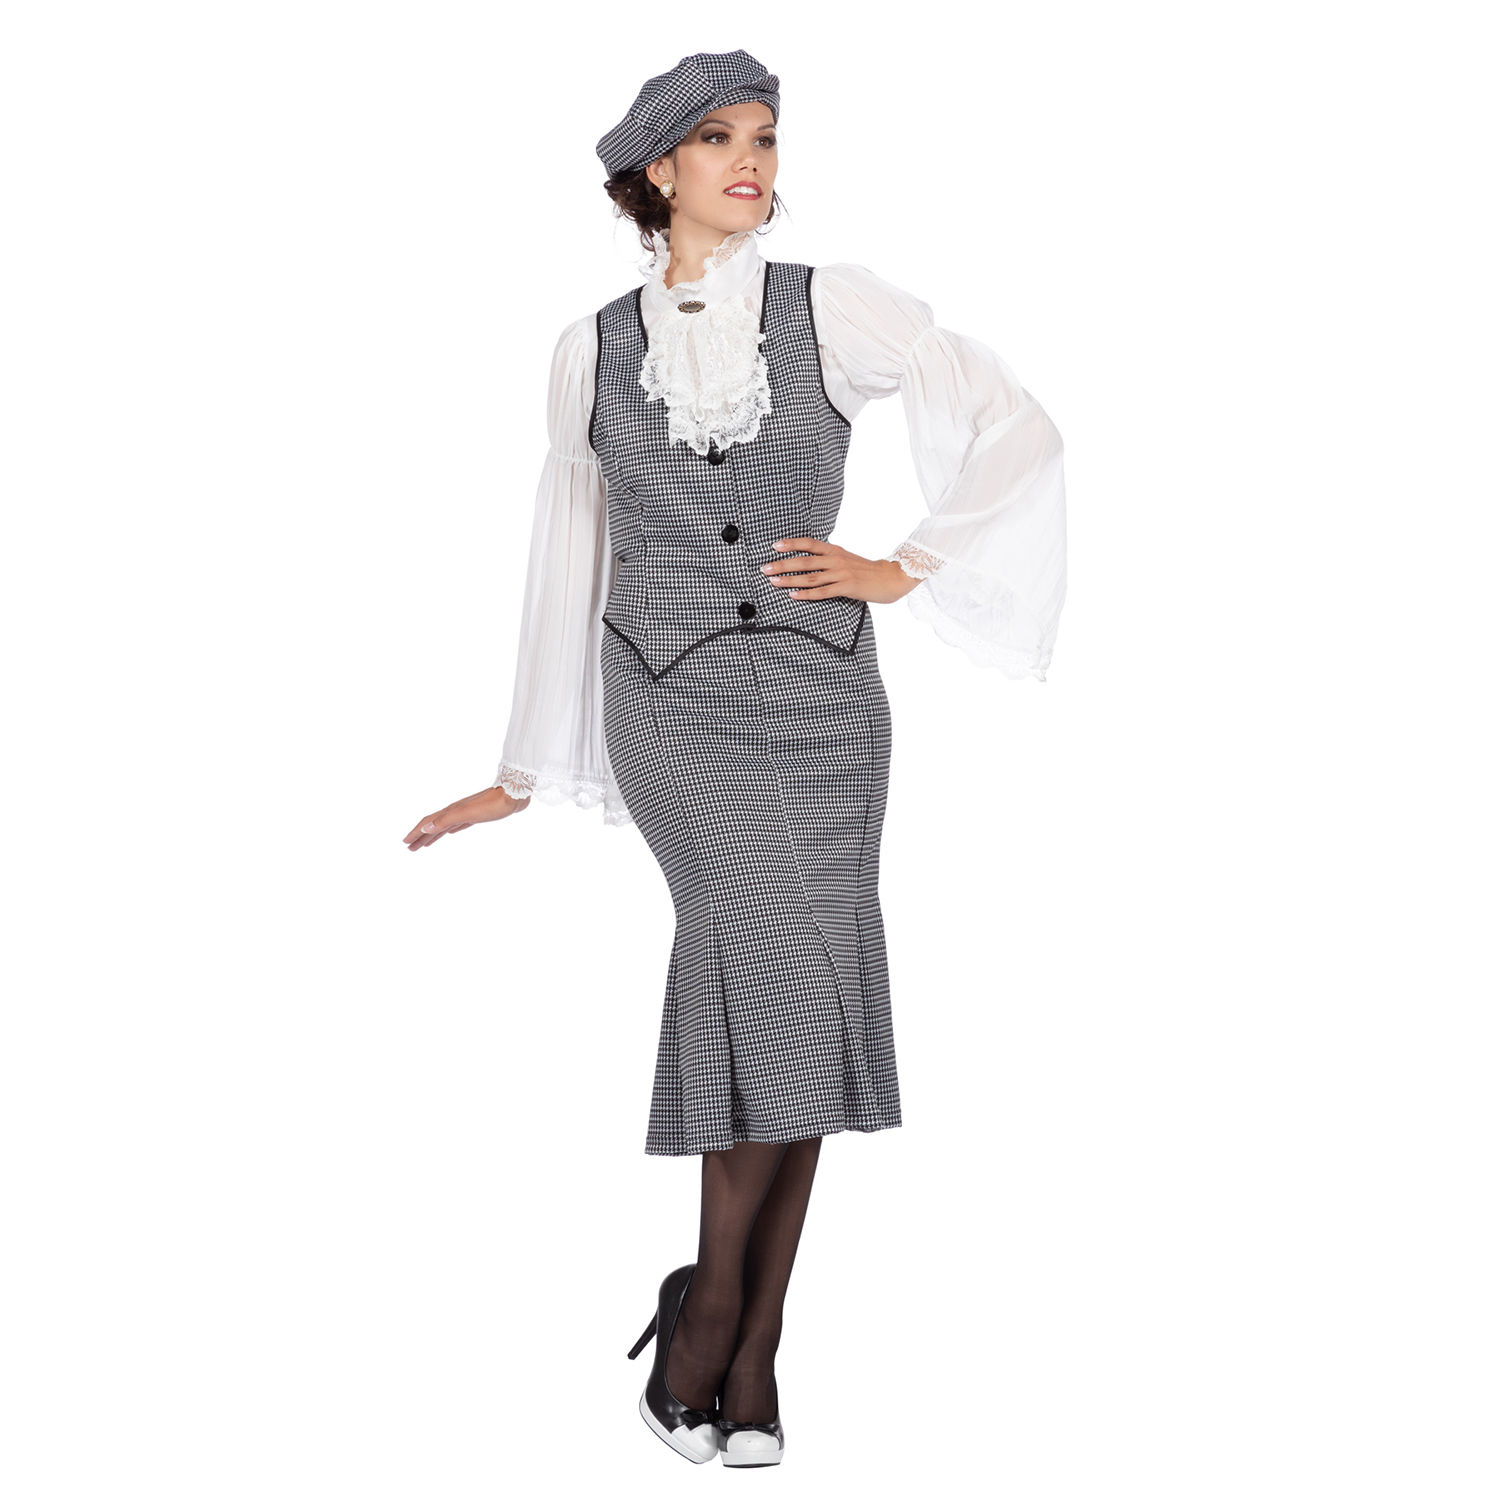 Damen-Kostüm 20er Jahre Polly, 3-teilig mit Mütze, Weste & Rock, Gr. 36